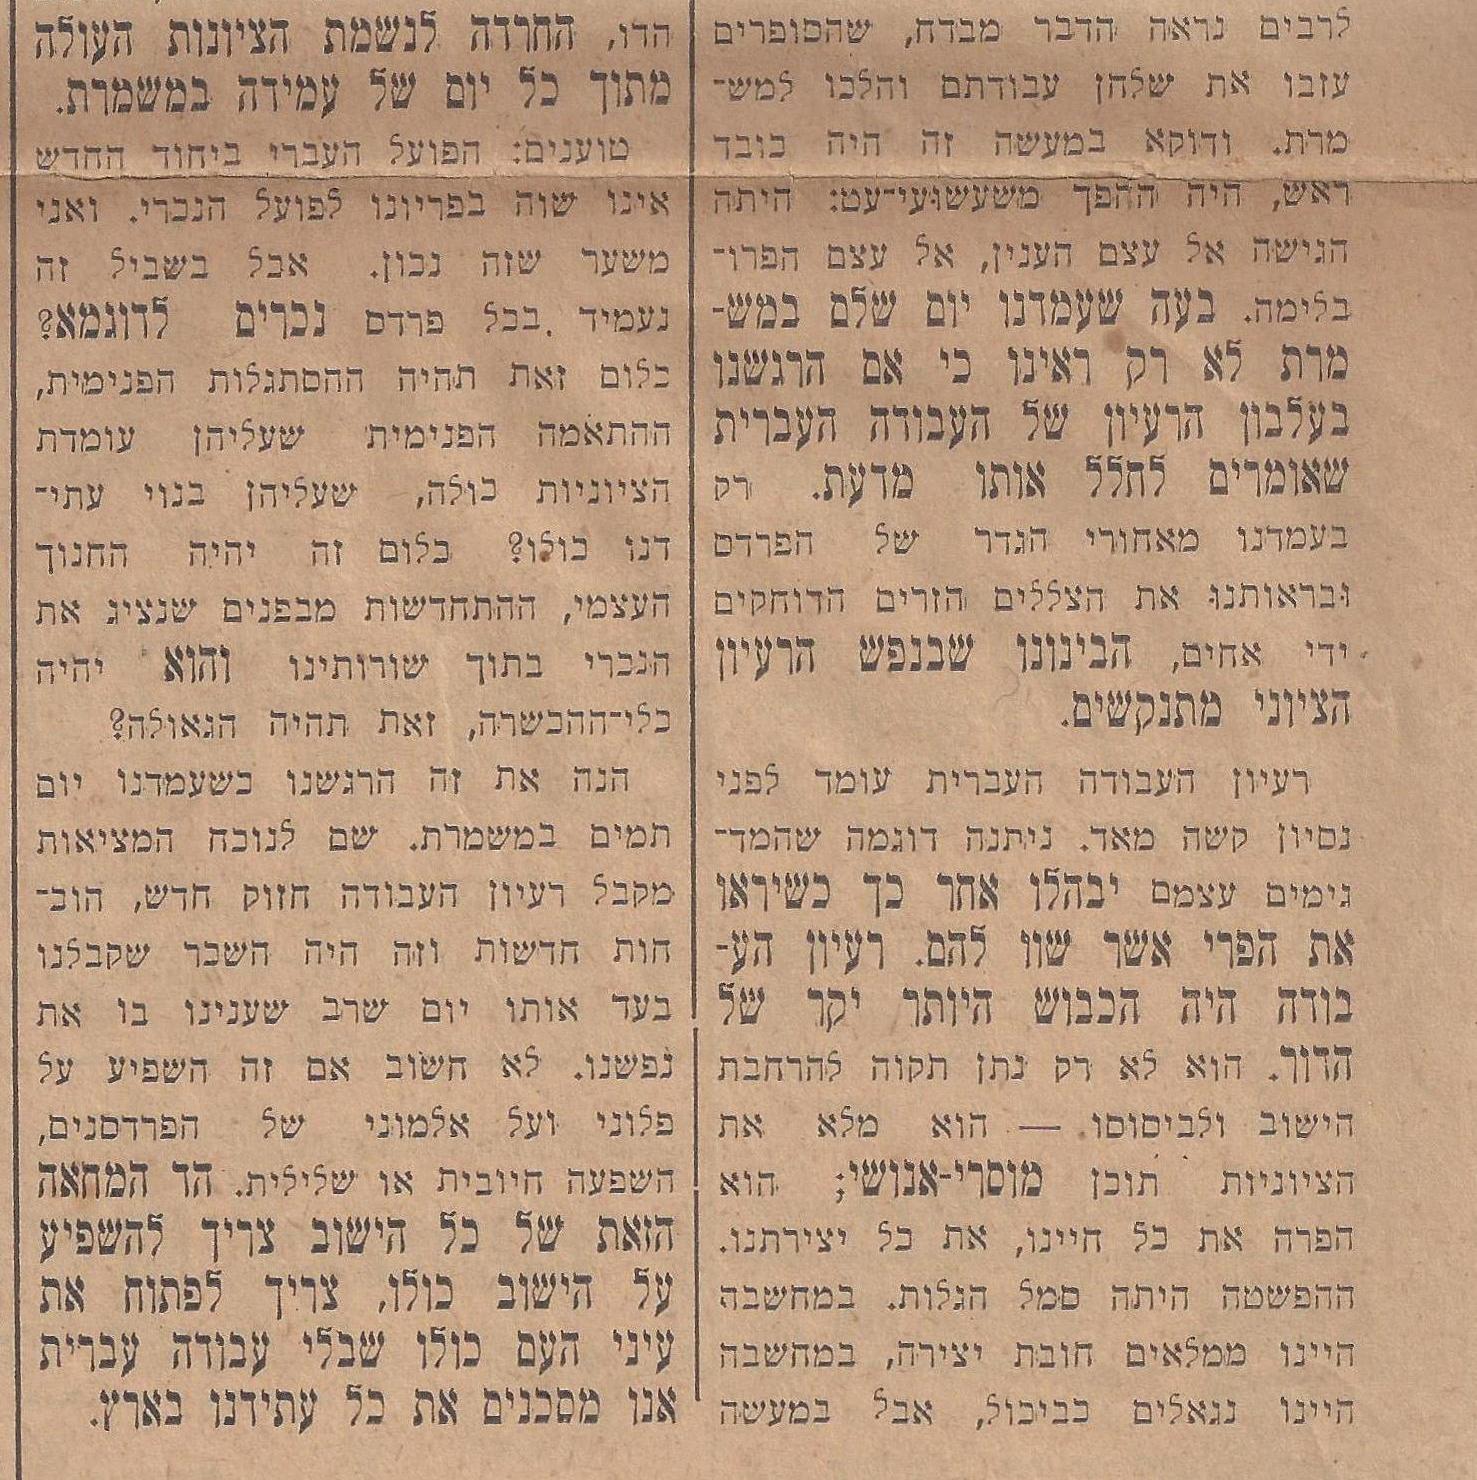 דבר יוניי 29, 1934 חרדה  לנשמת הציונות, מחאה נגד כל הישוב, מאת יעקב פיכמן